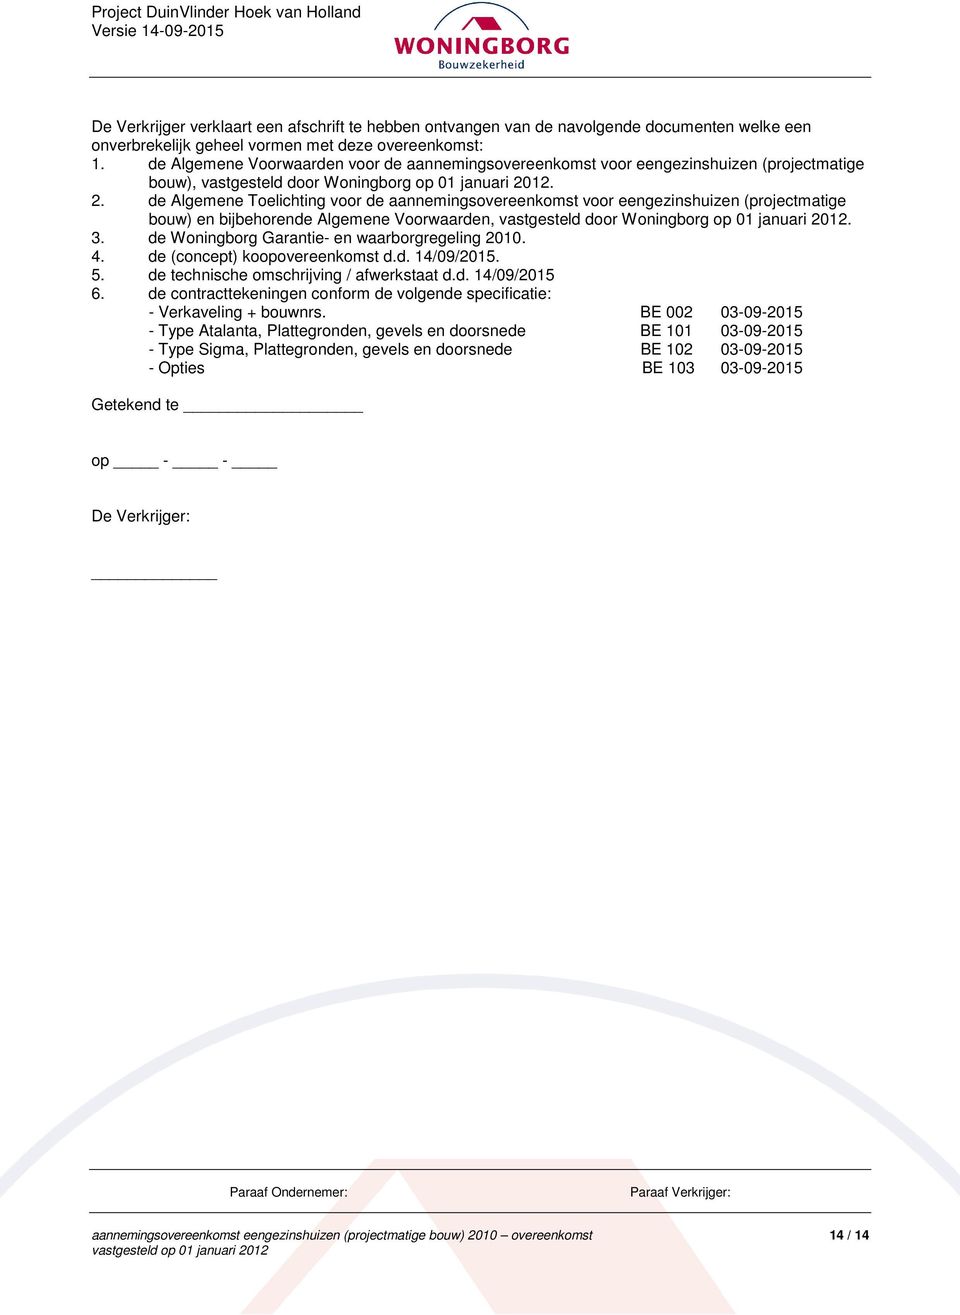 12. 2. de Algemene Toelichting voor de aannemingsovereenkomst voor eengezinshuizen (projectmatige bouw) en bijbehorende Algemene Voorwaarden, vastgesteld door Woningborg op 01 januari 2012. 3.